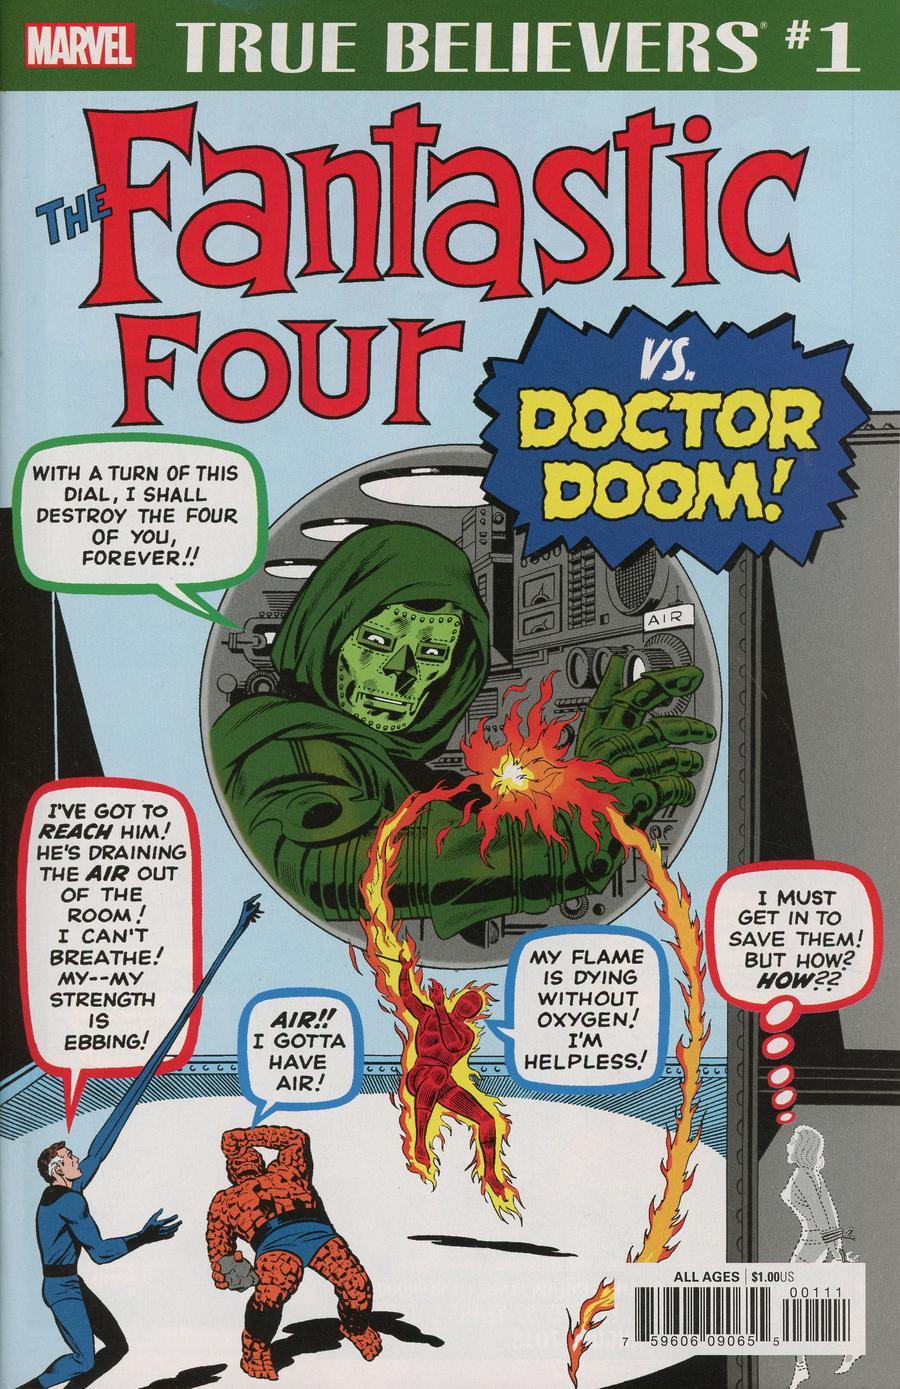 True Believers Fantastic Four vs Doctor Doom Vol. 1 #1